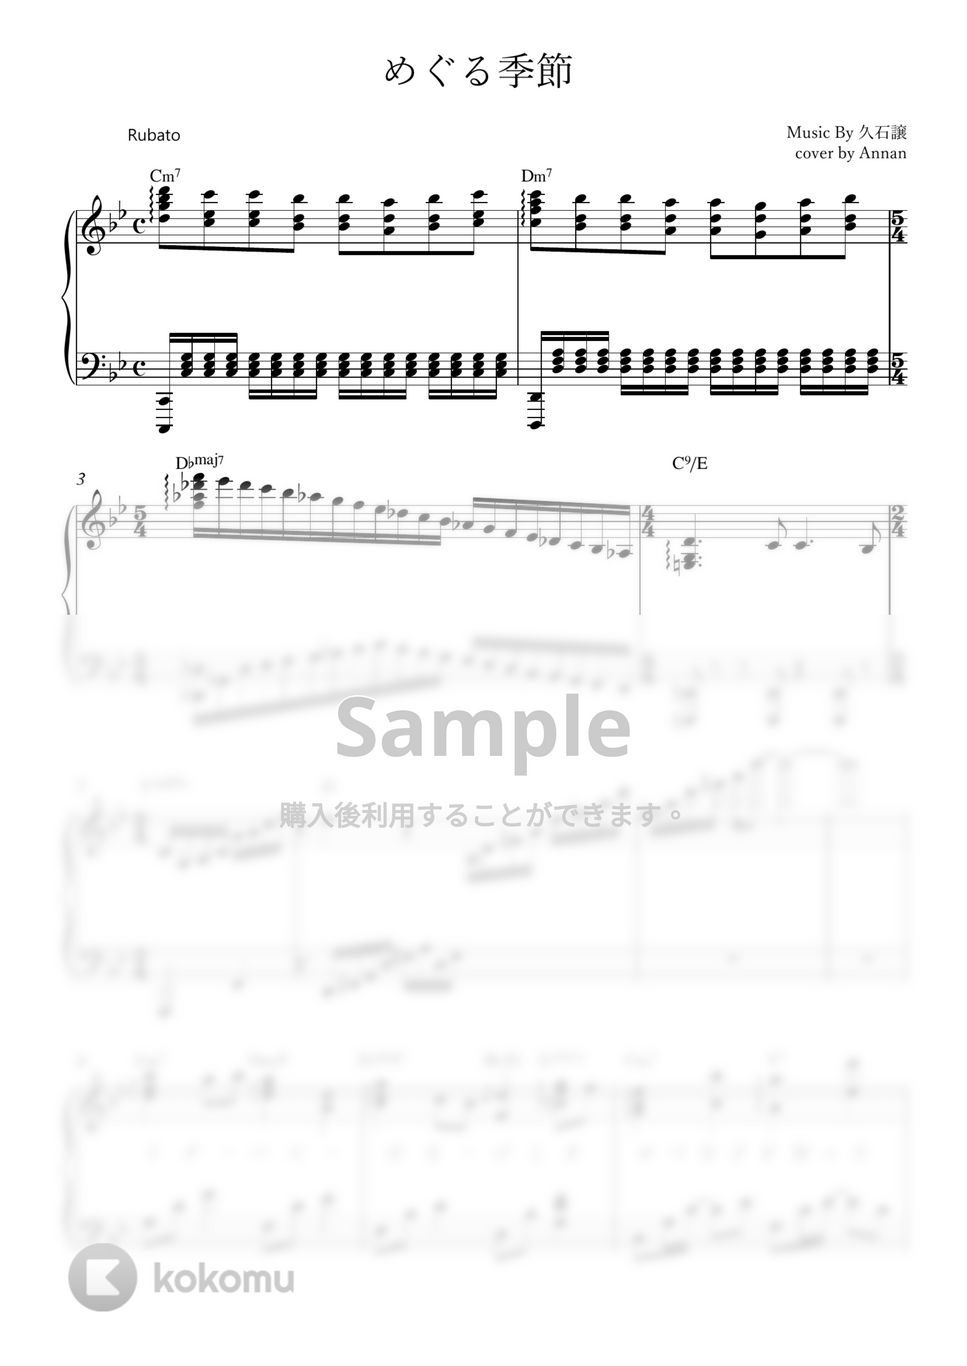 井上あずみ - めぐる季節 (ピアノ伴奏ver. / 歌詞付き) by Annan